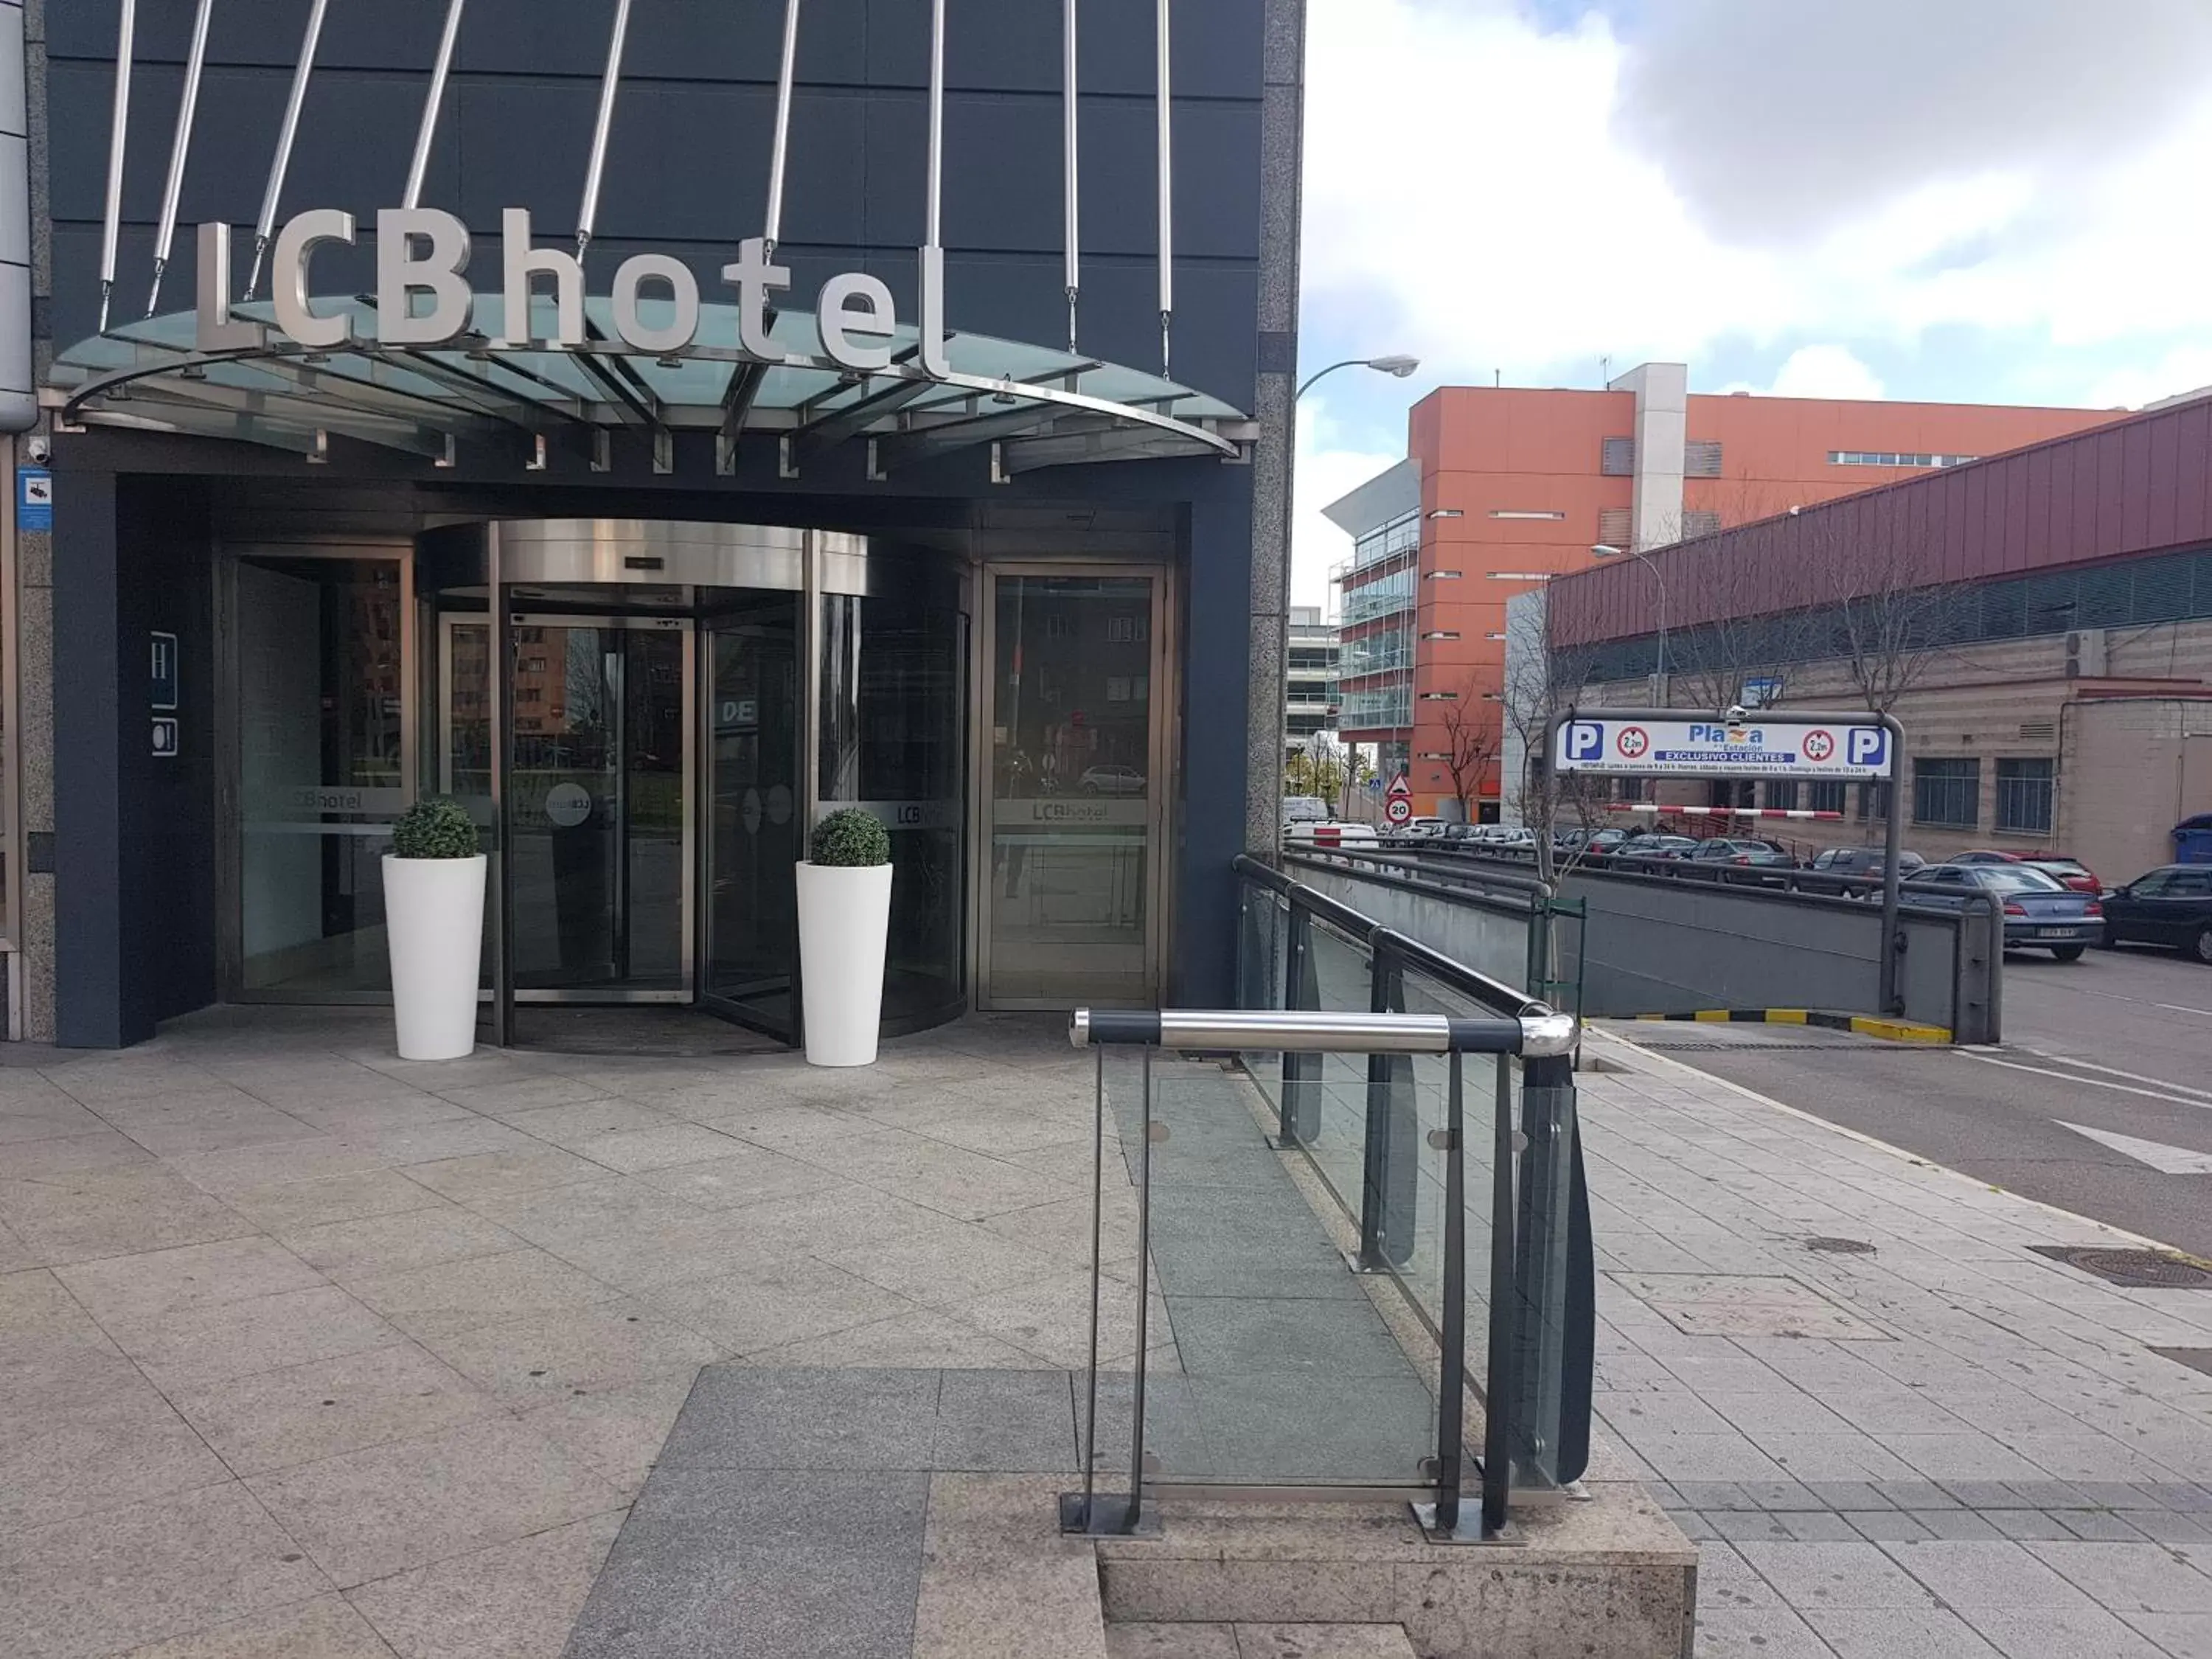 Facade/entrance in LCB Hotel Fuenlabrada